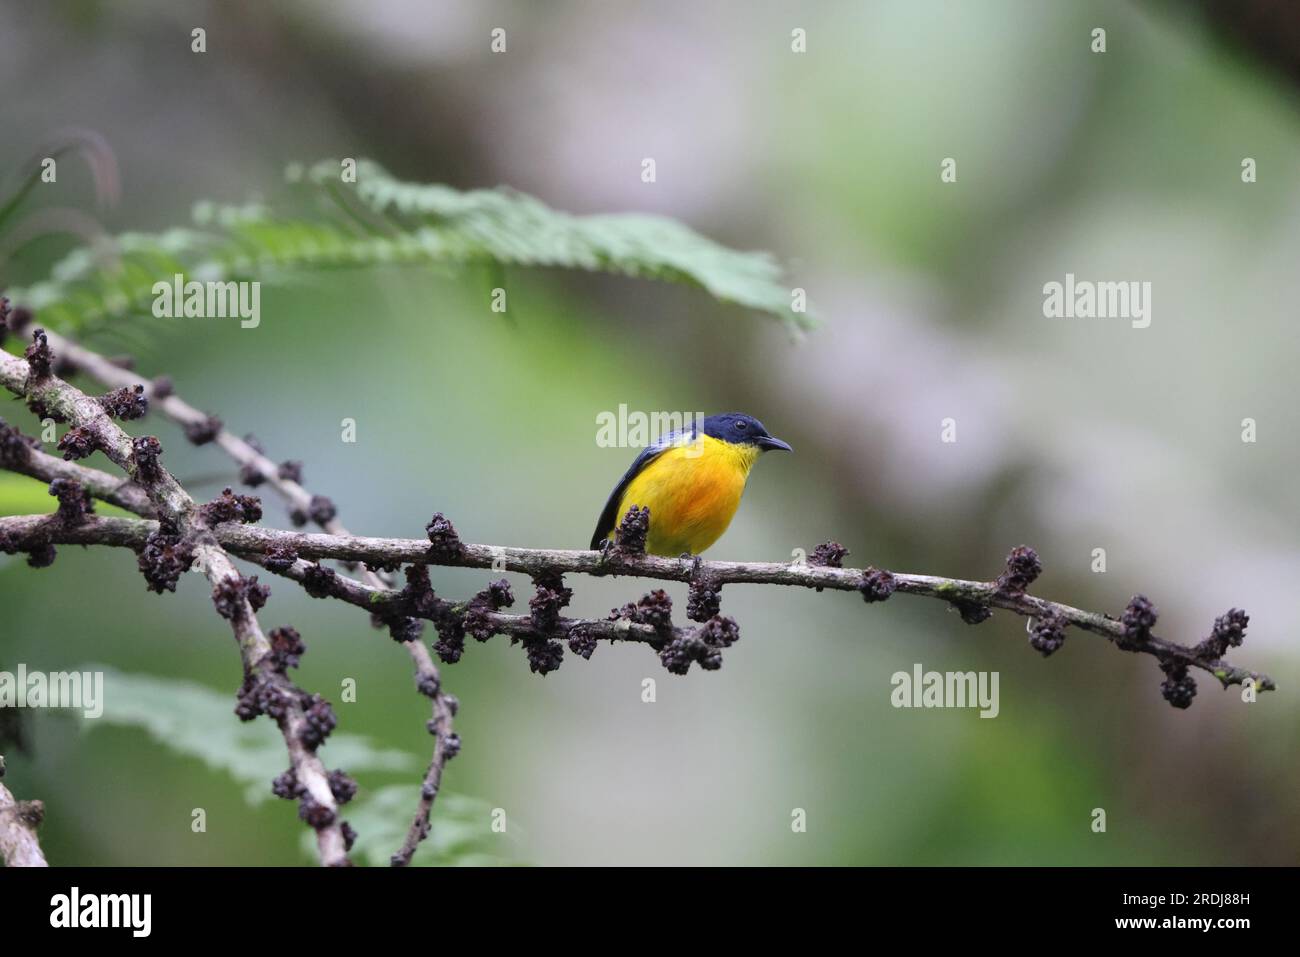 Il picchio di fiori con il becco d'arancio (Dicaeum trigonostigma) è una specie di uccello della famiglia Dicaeidae. Questa foto è stata scattata nell'isola di Luzon, nelle Filippine Foto Stock